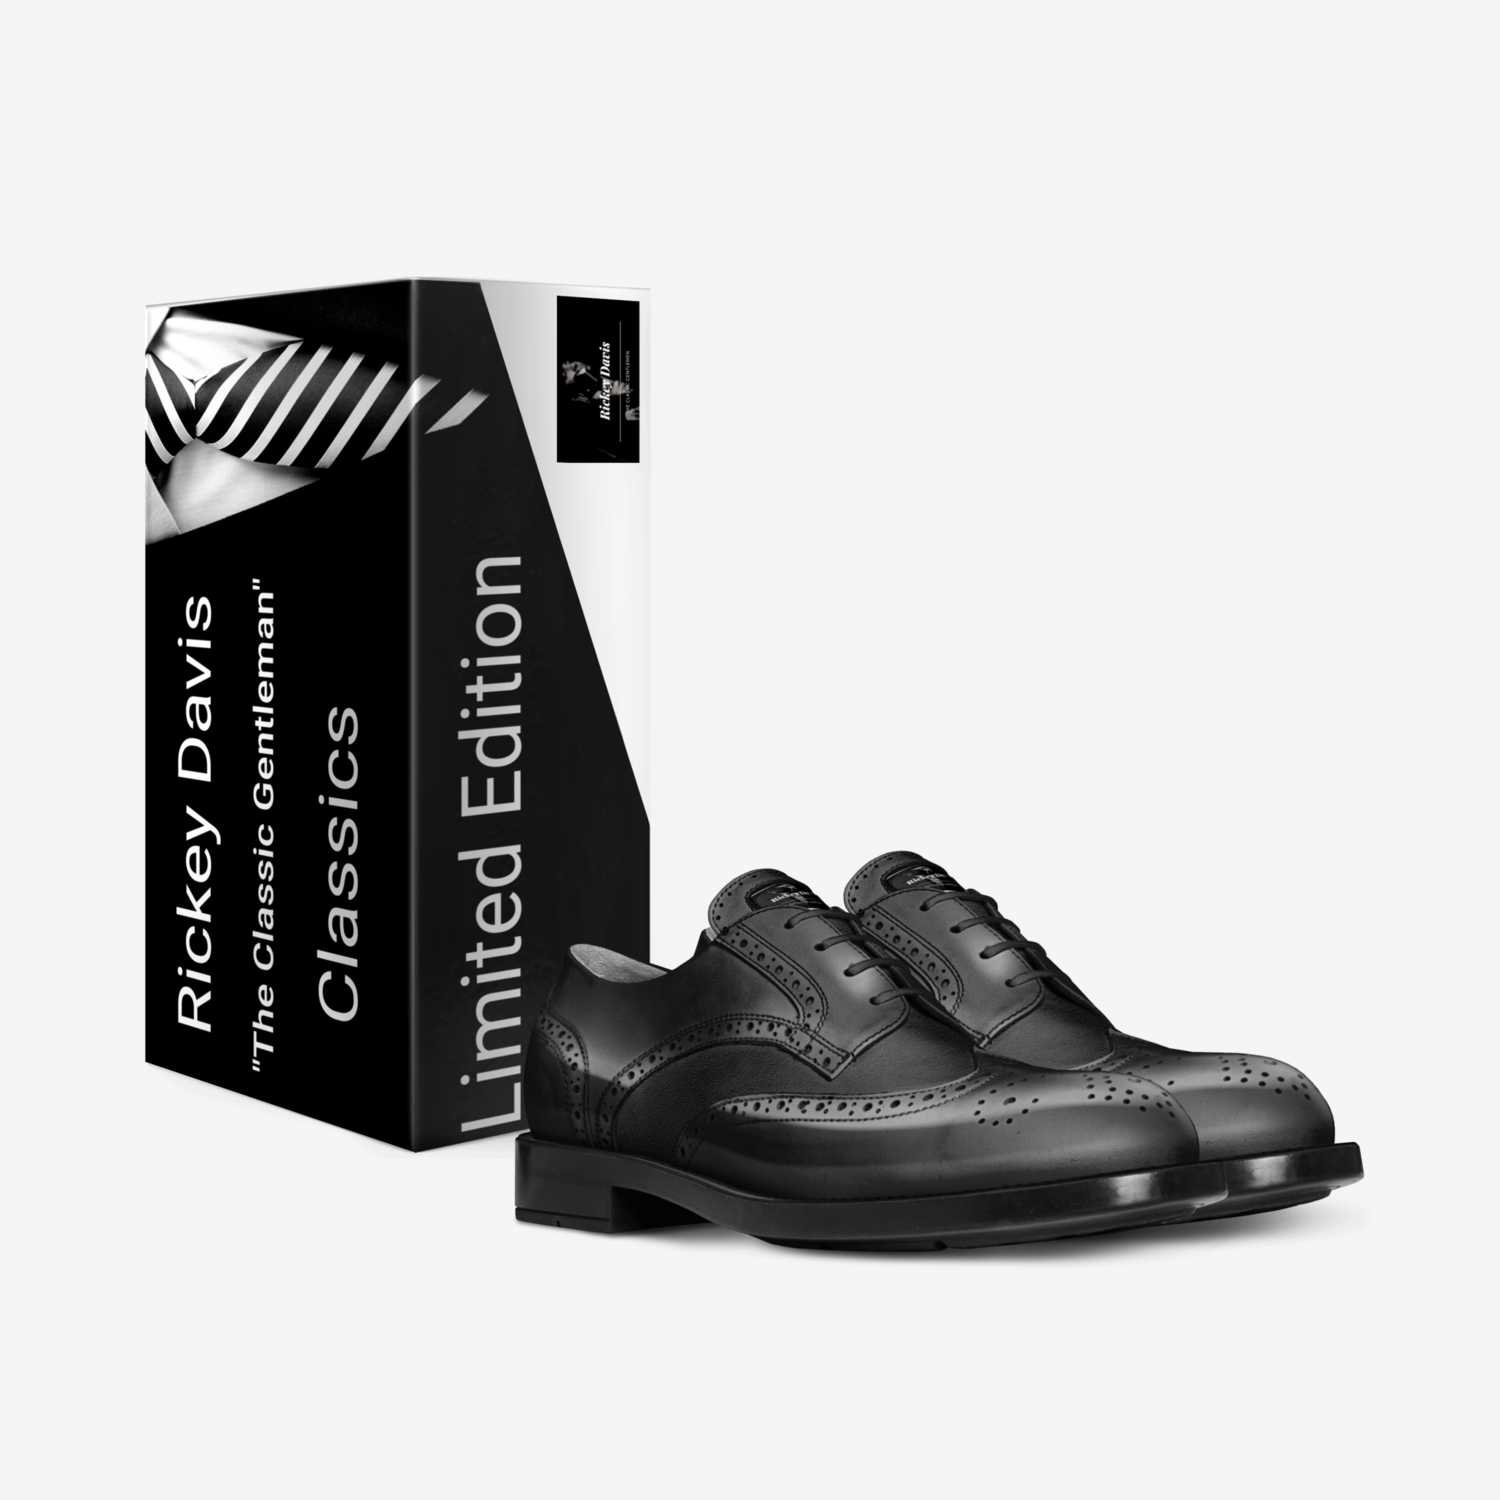 Rickey Davis custom made in Italy shoes by Rickey Davis | Box view